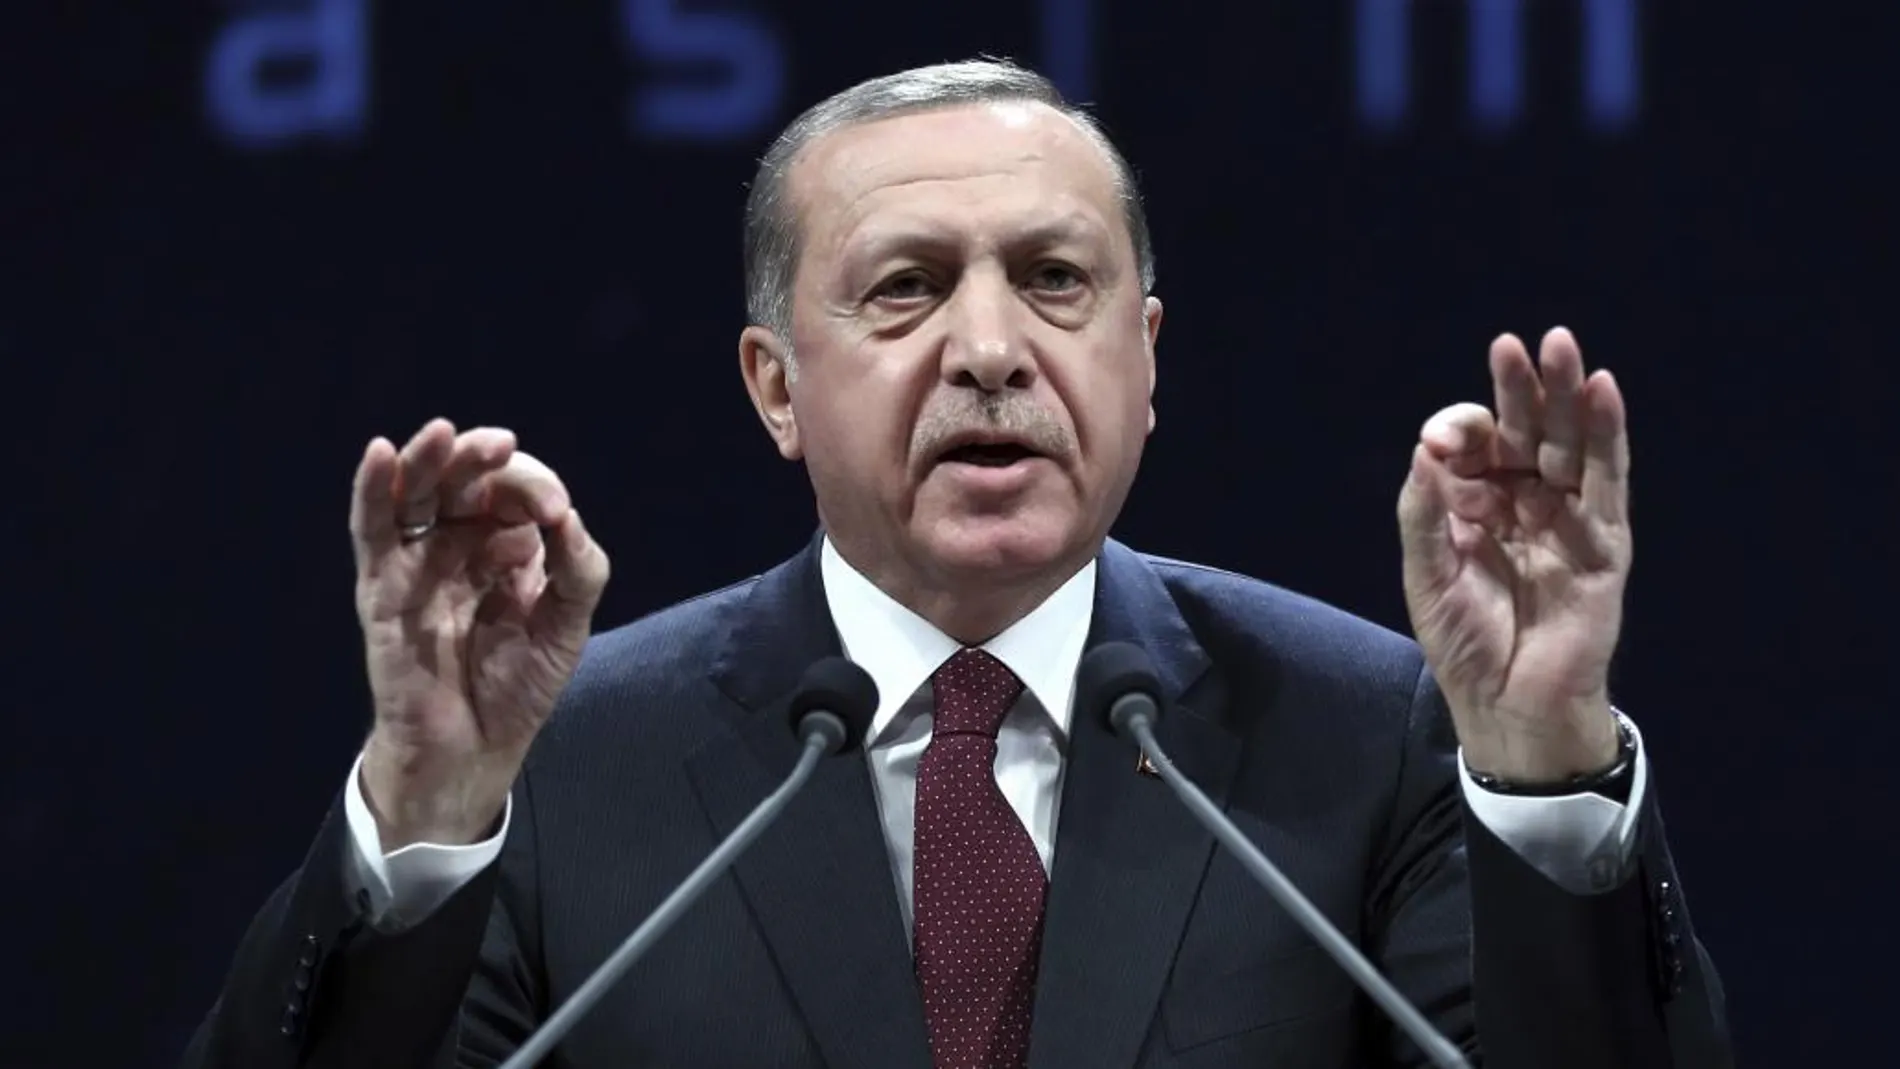 El presidente turco Recep Tayyip Erdogan, ha cesado hoy a 15.700 funcionarios